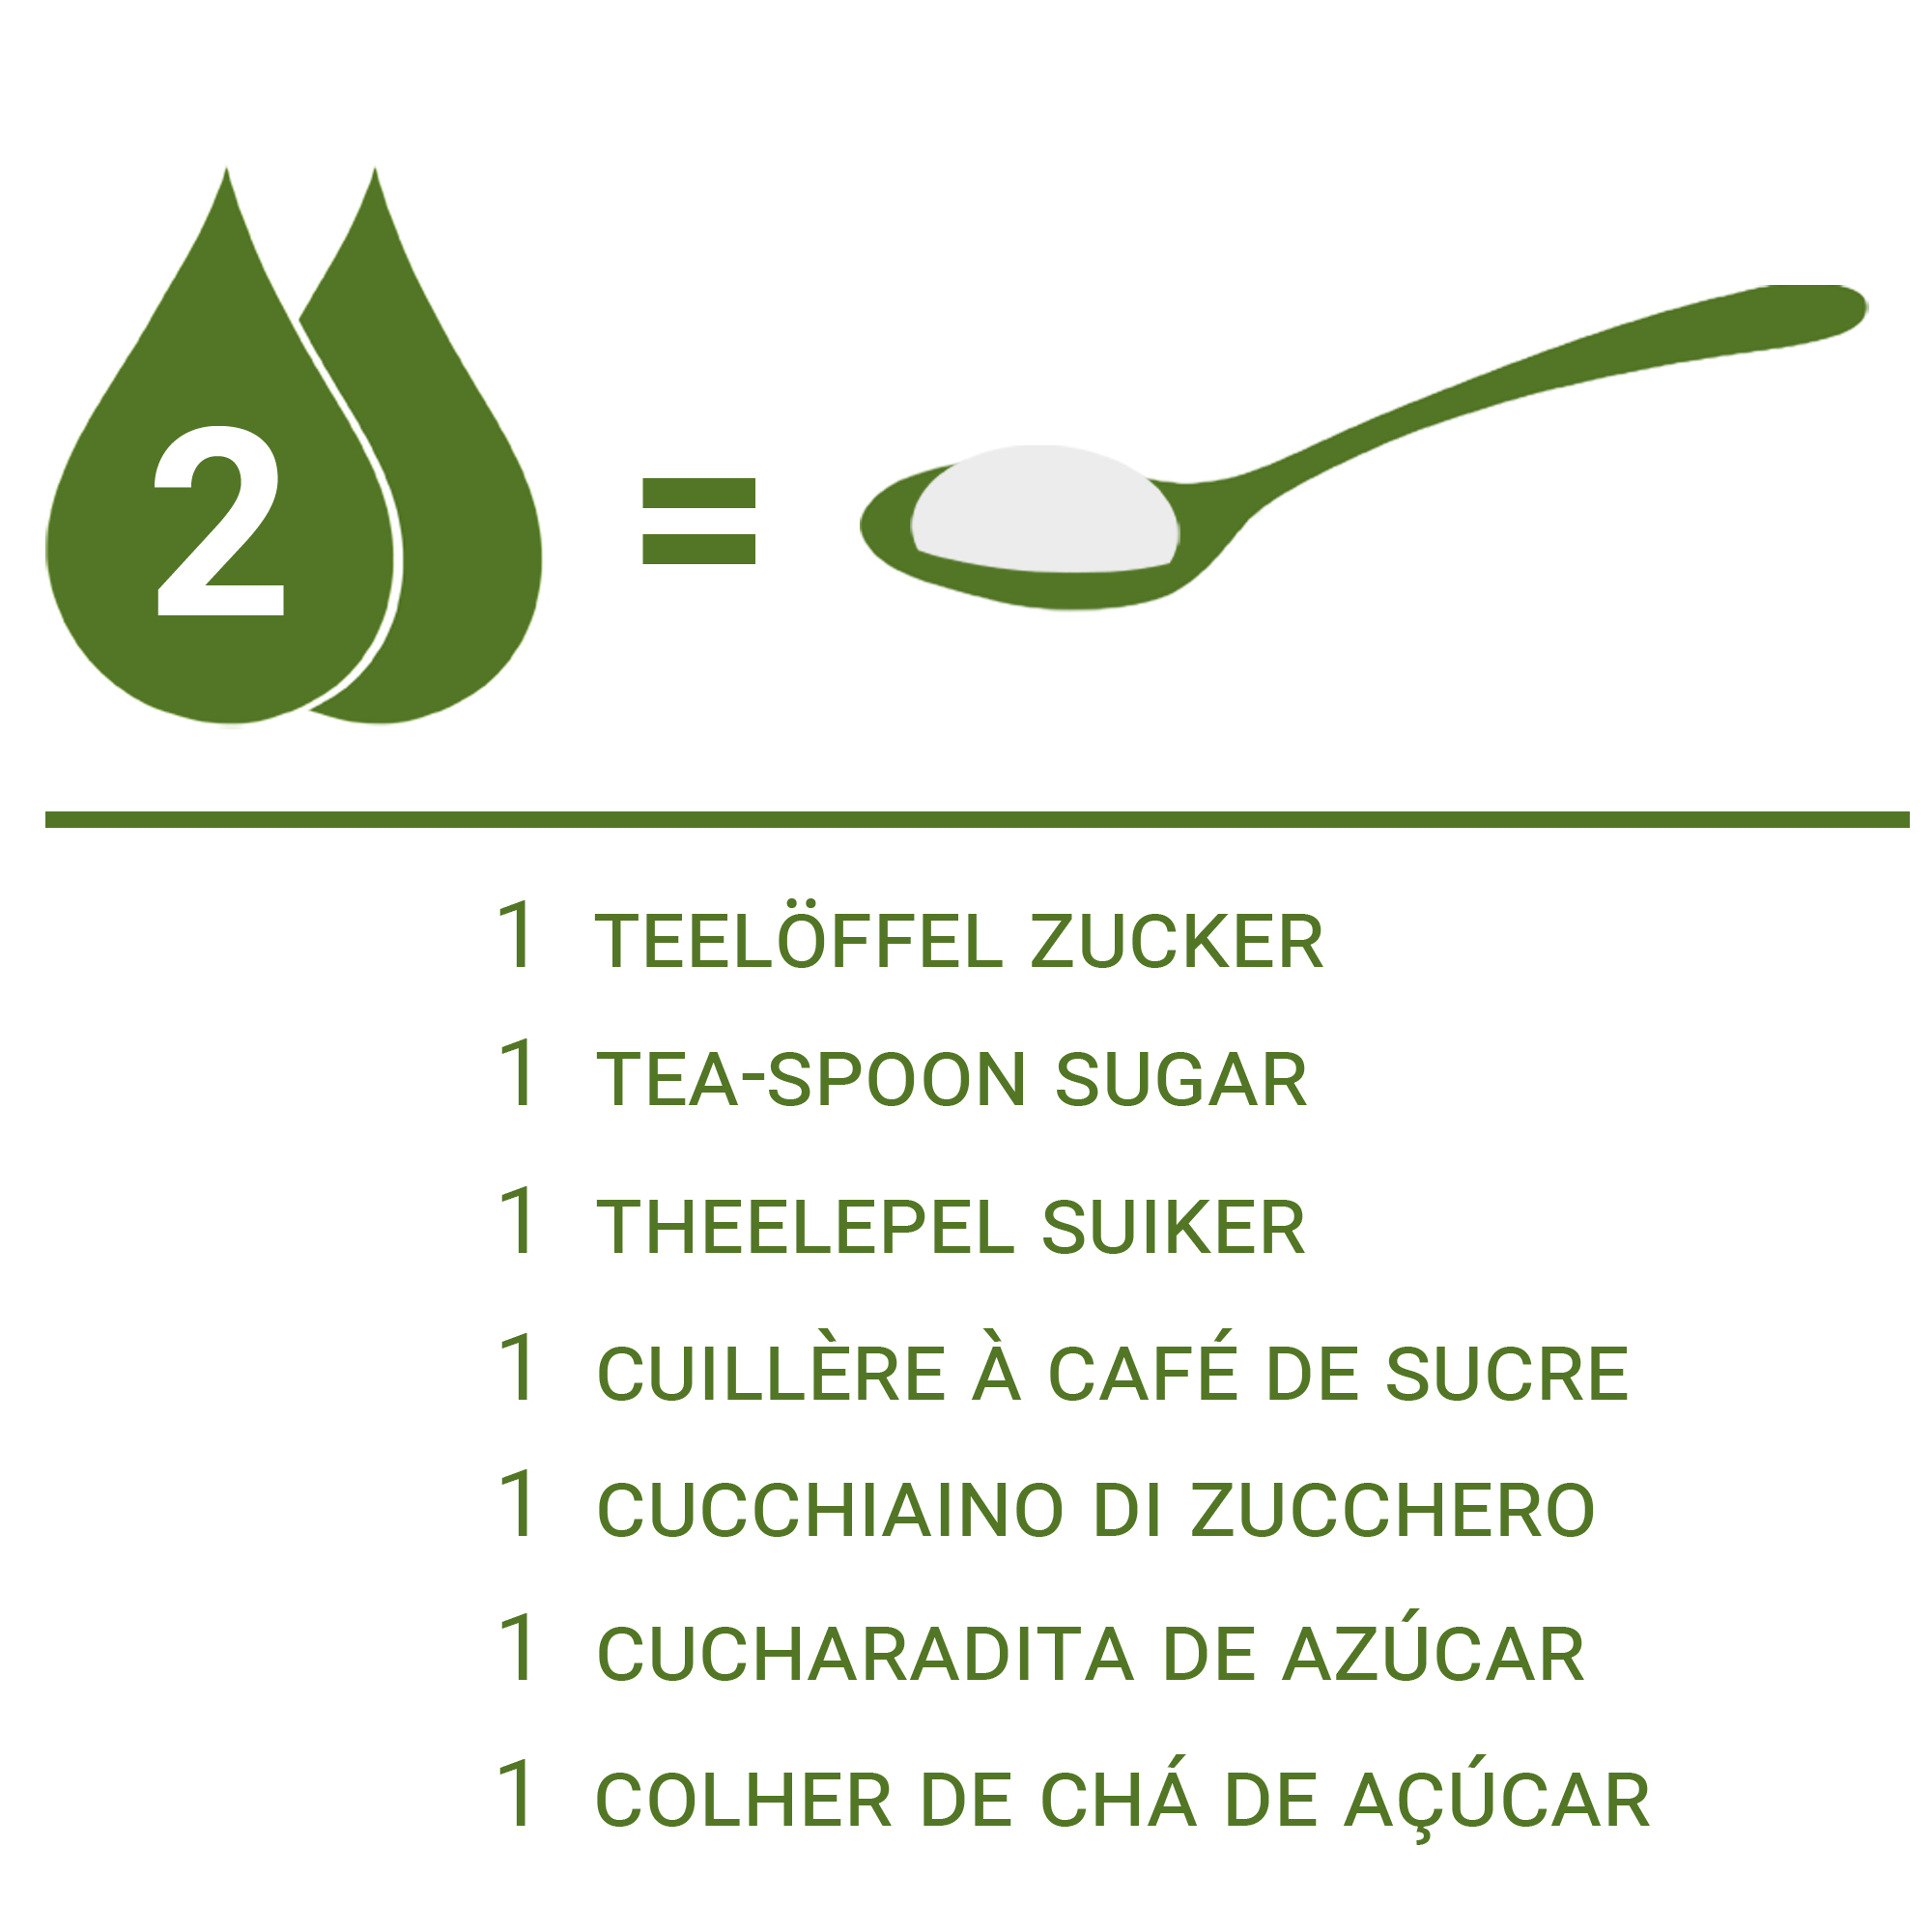 Il dosaggio della Stevia Liquida rispetto allo zucchero: 2 gocce pari a 1 cucchiaino di zucchero.